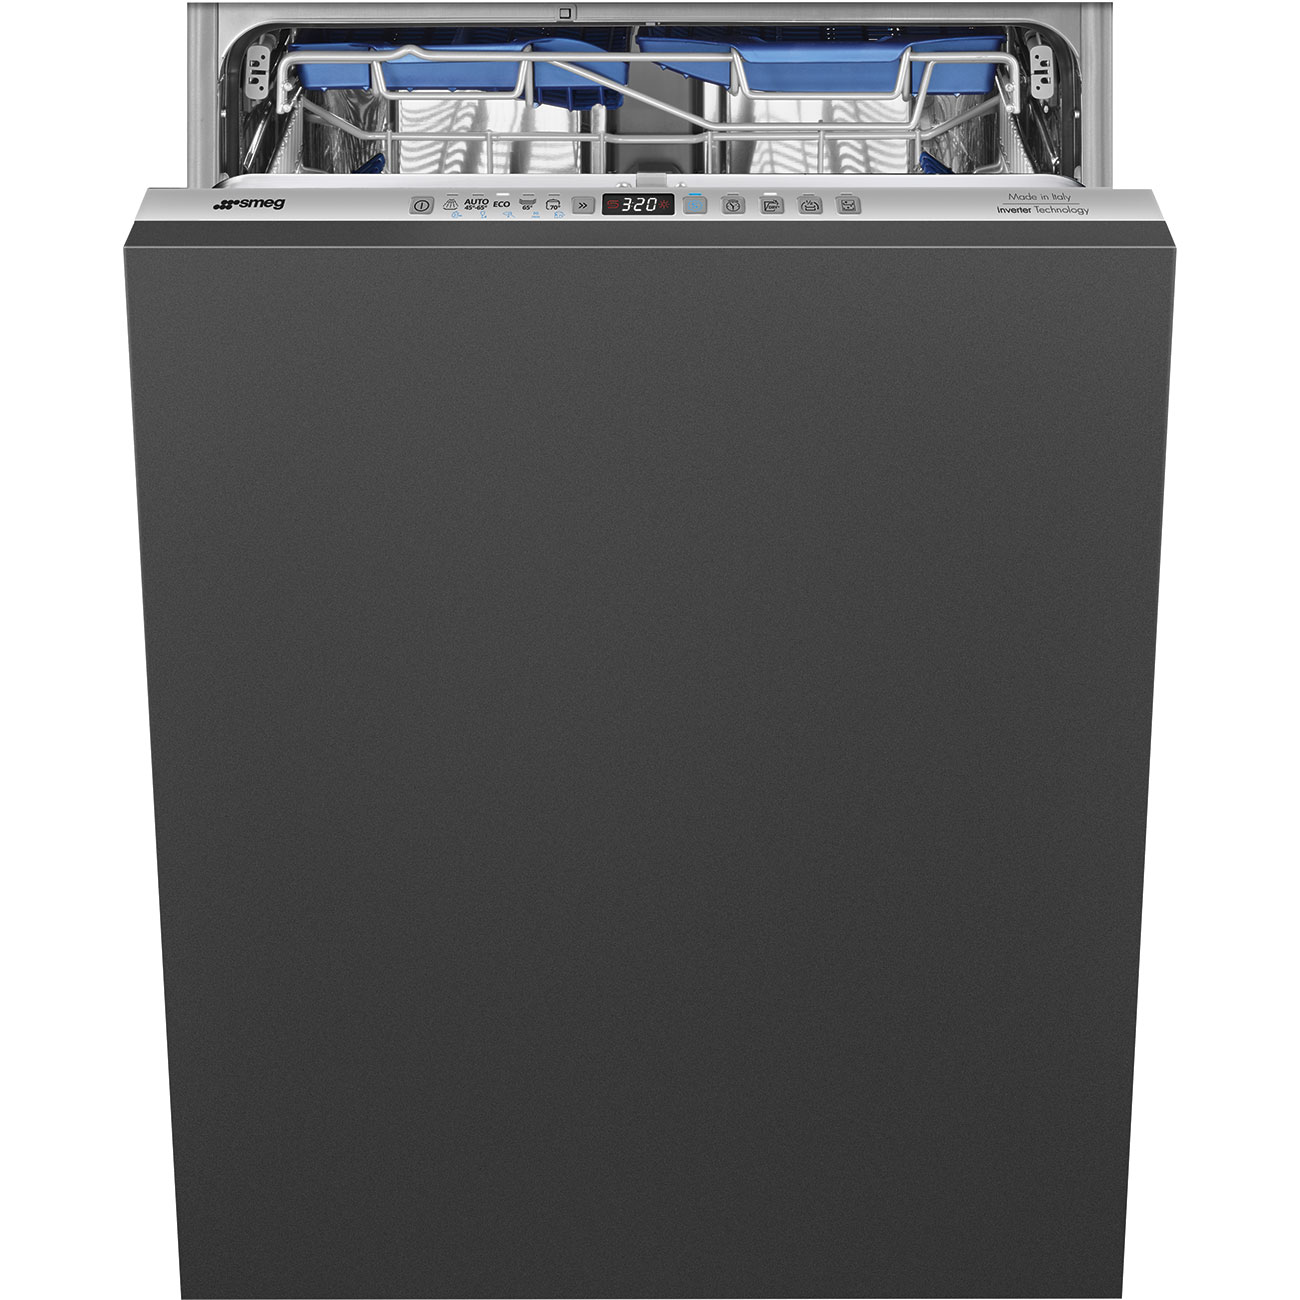 Встраиваемая посудомоечная машина Smeg STL323BL встраиваемая посудомоечная машина smeg stl323bl